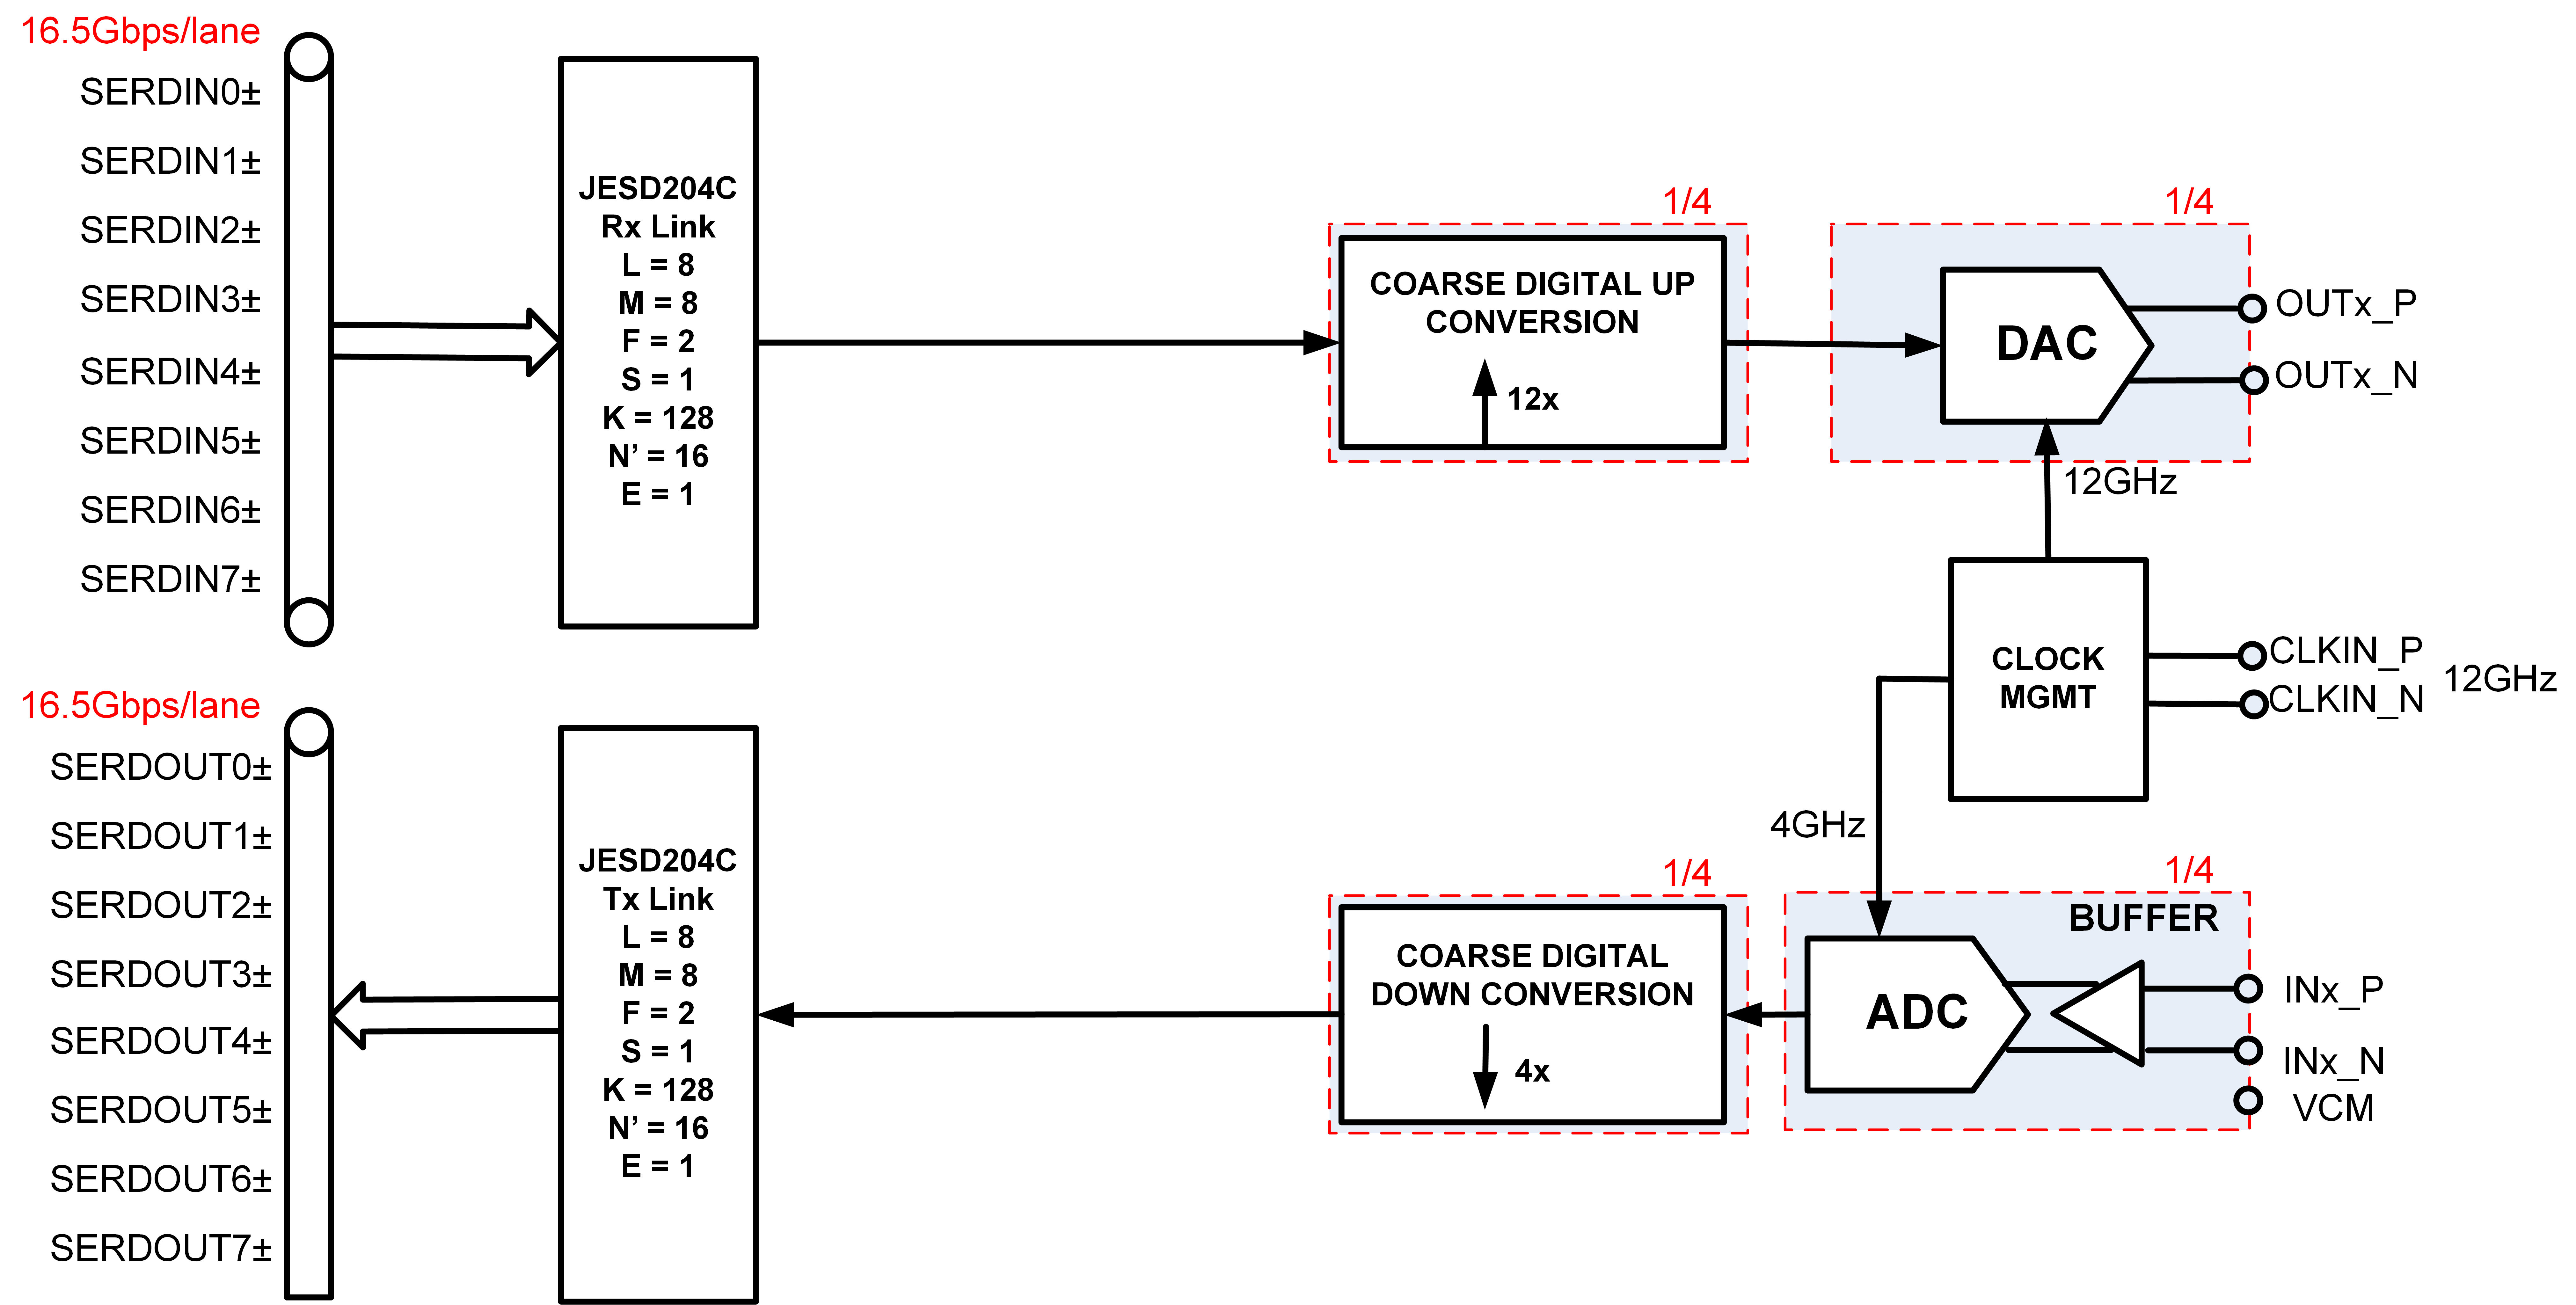 Setup block diagram of AD9081